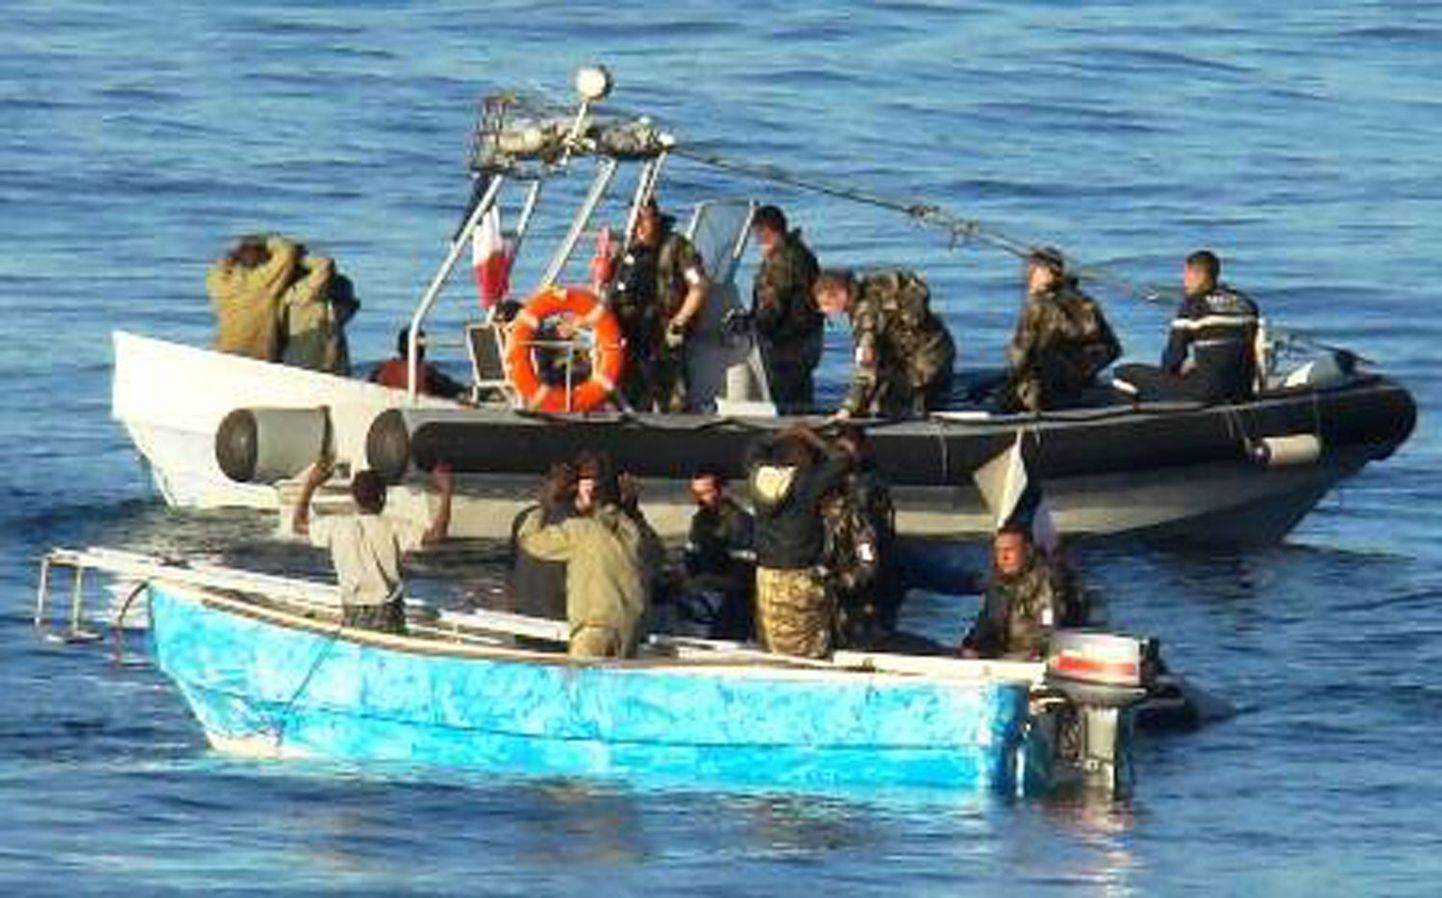 Prantsuse sõdurid vahistamas Panama kaubalaeva kaaperdada üritanud Somaalia piraate.